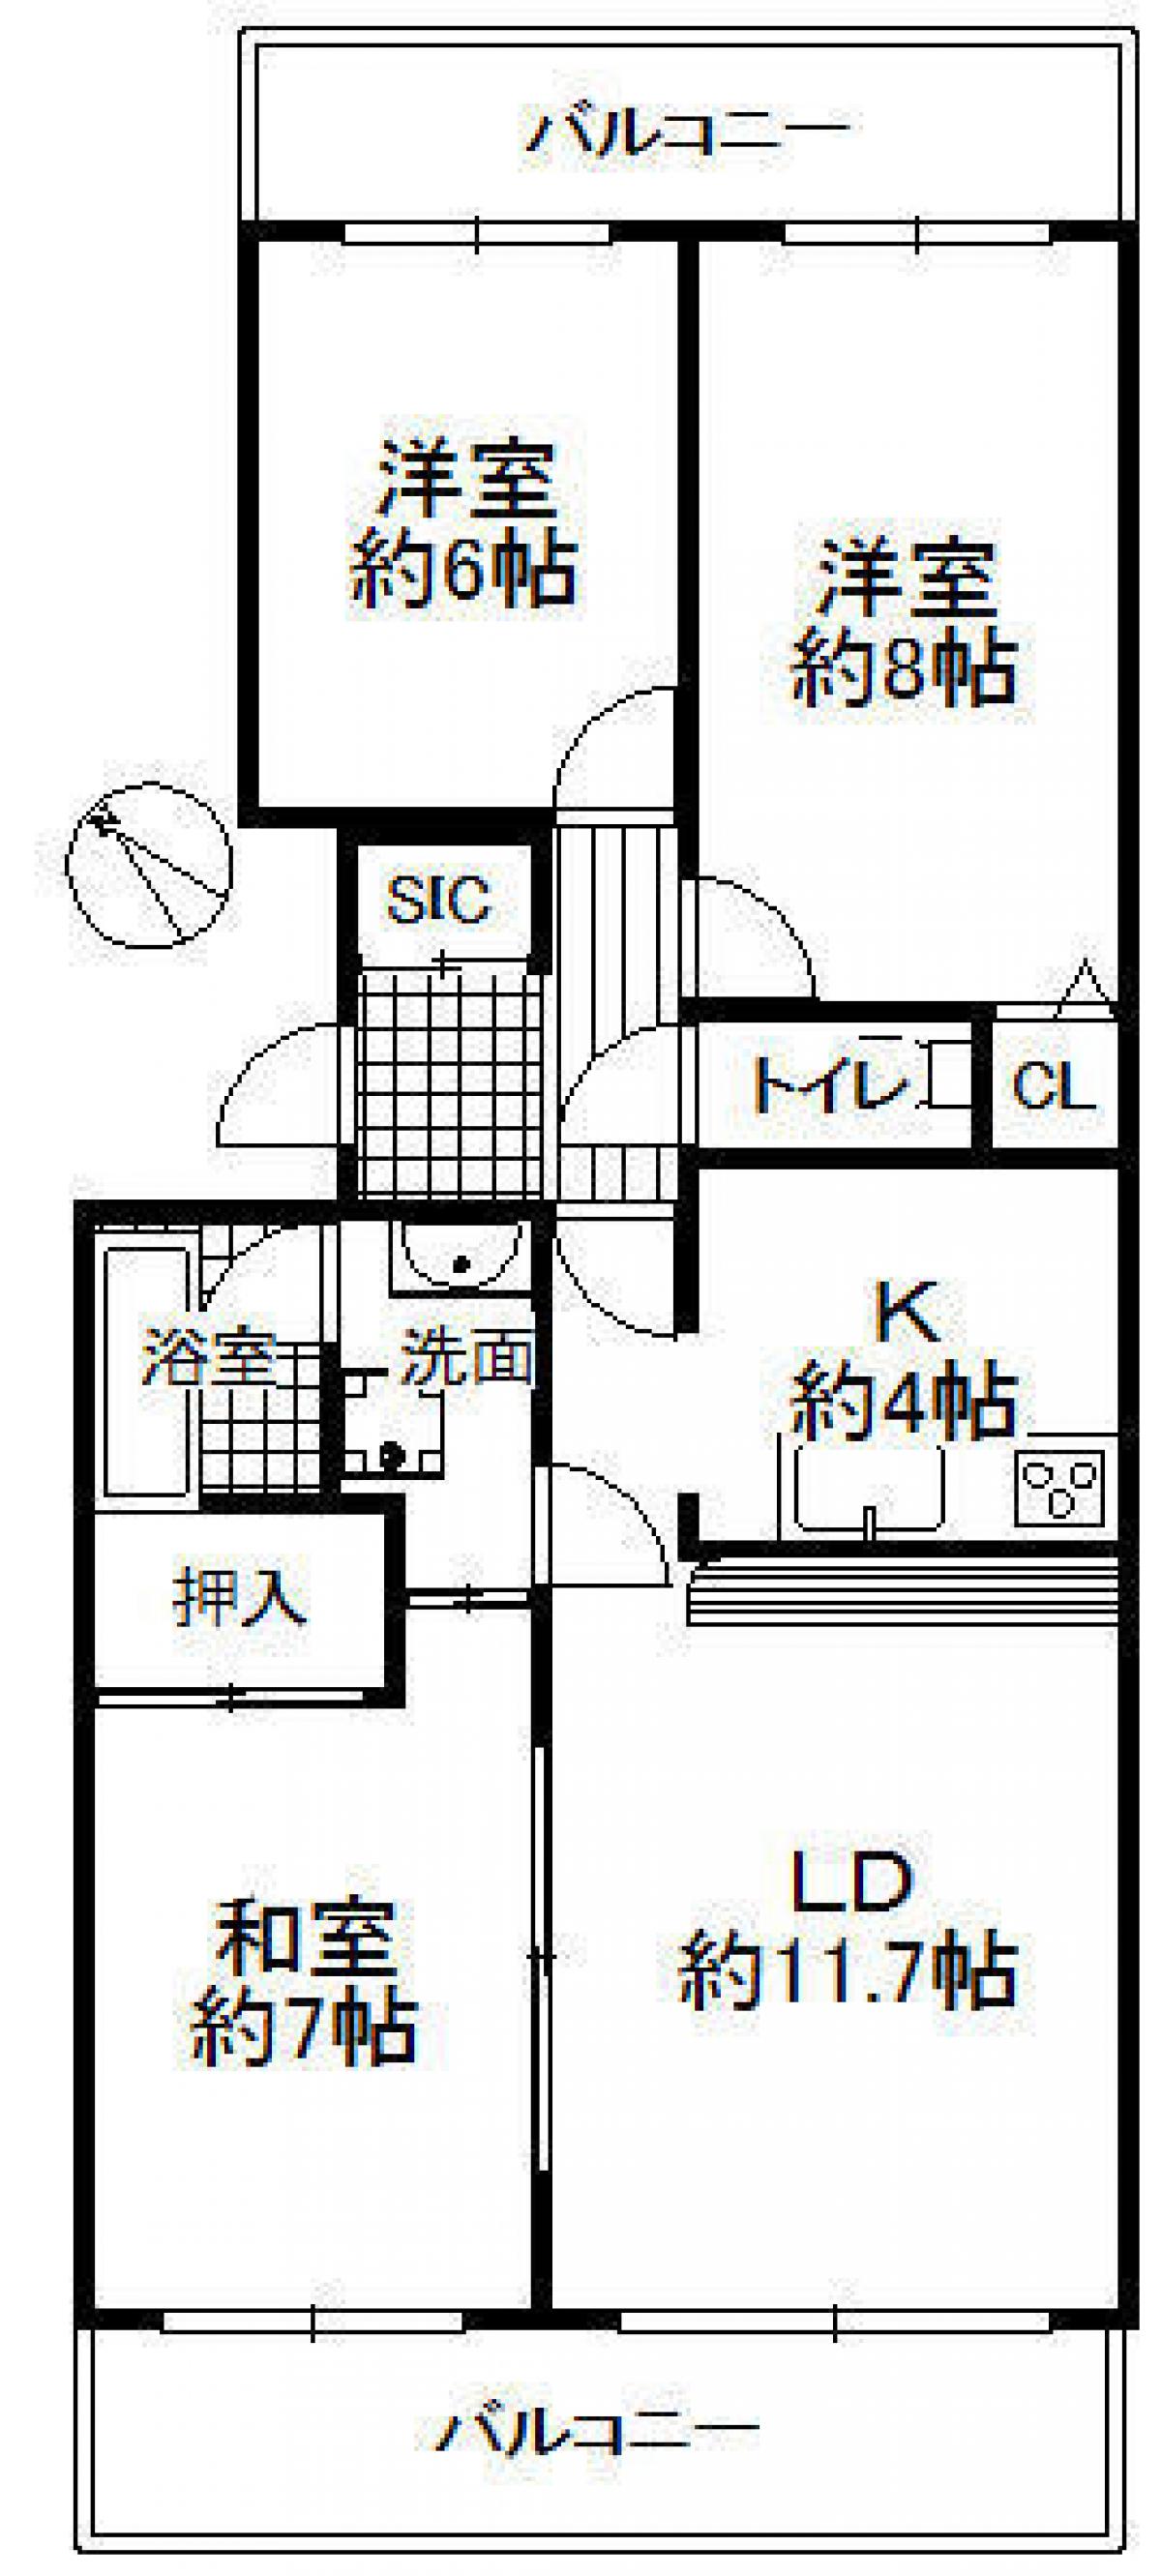 Picture of Apartment For Sale in Tondabayashi Shi, Osaka, Japan